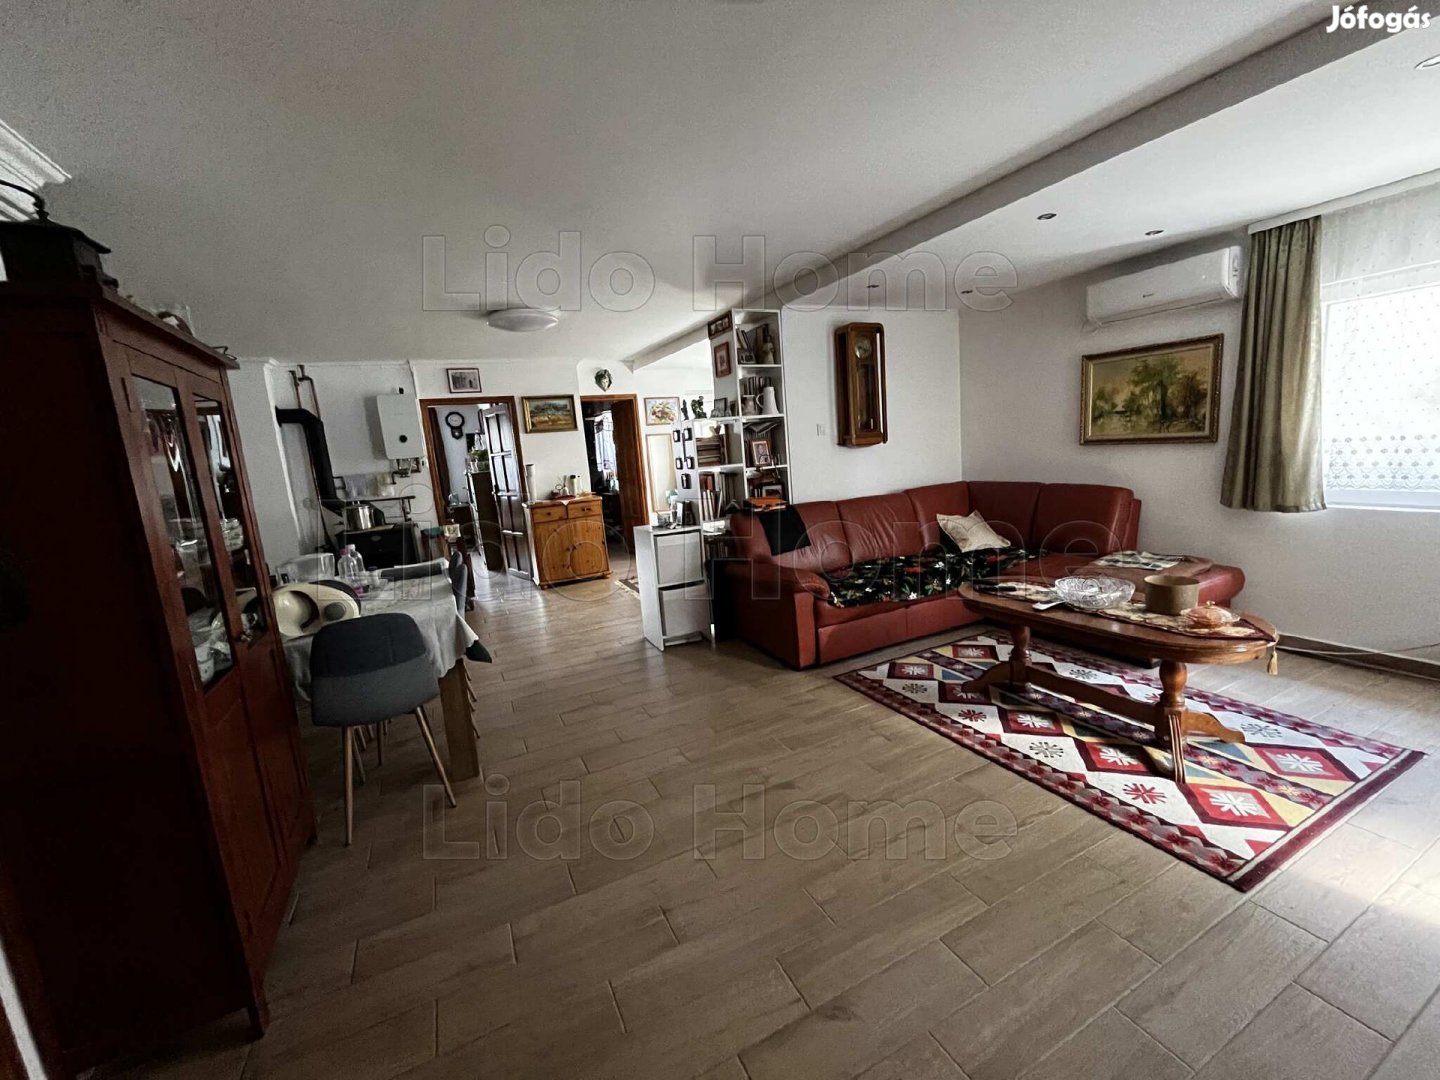 Eladó Siófok-Kiliti városrészben egy 100 m2-es, nagy nappalival és 3